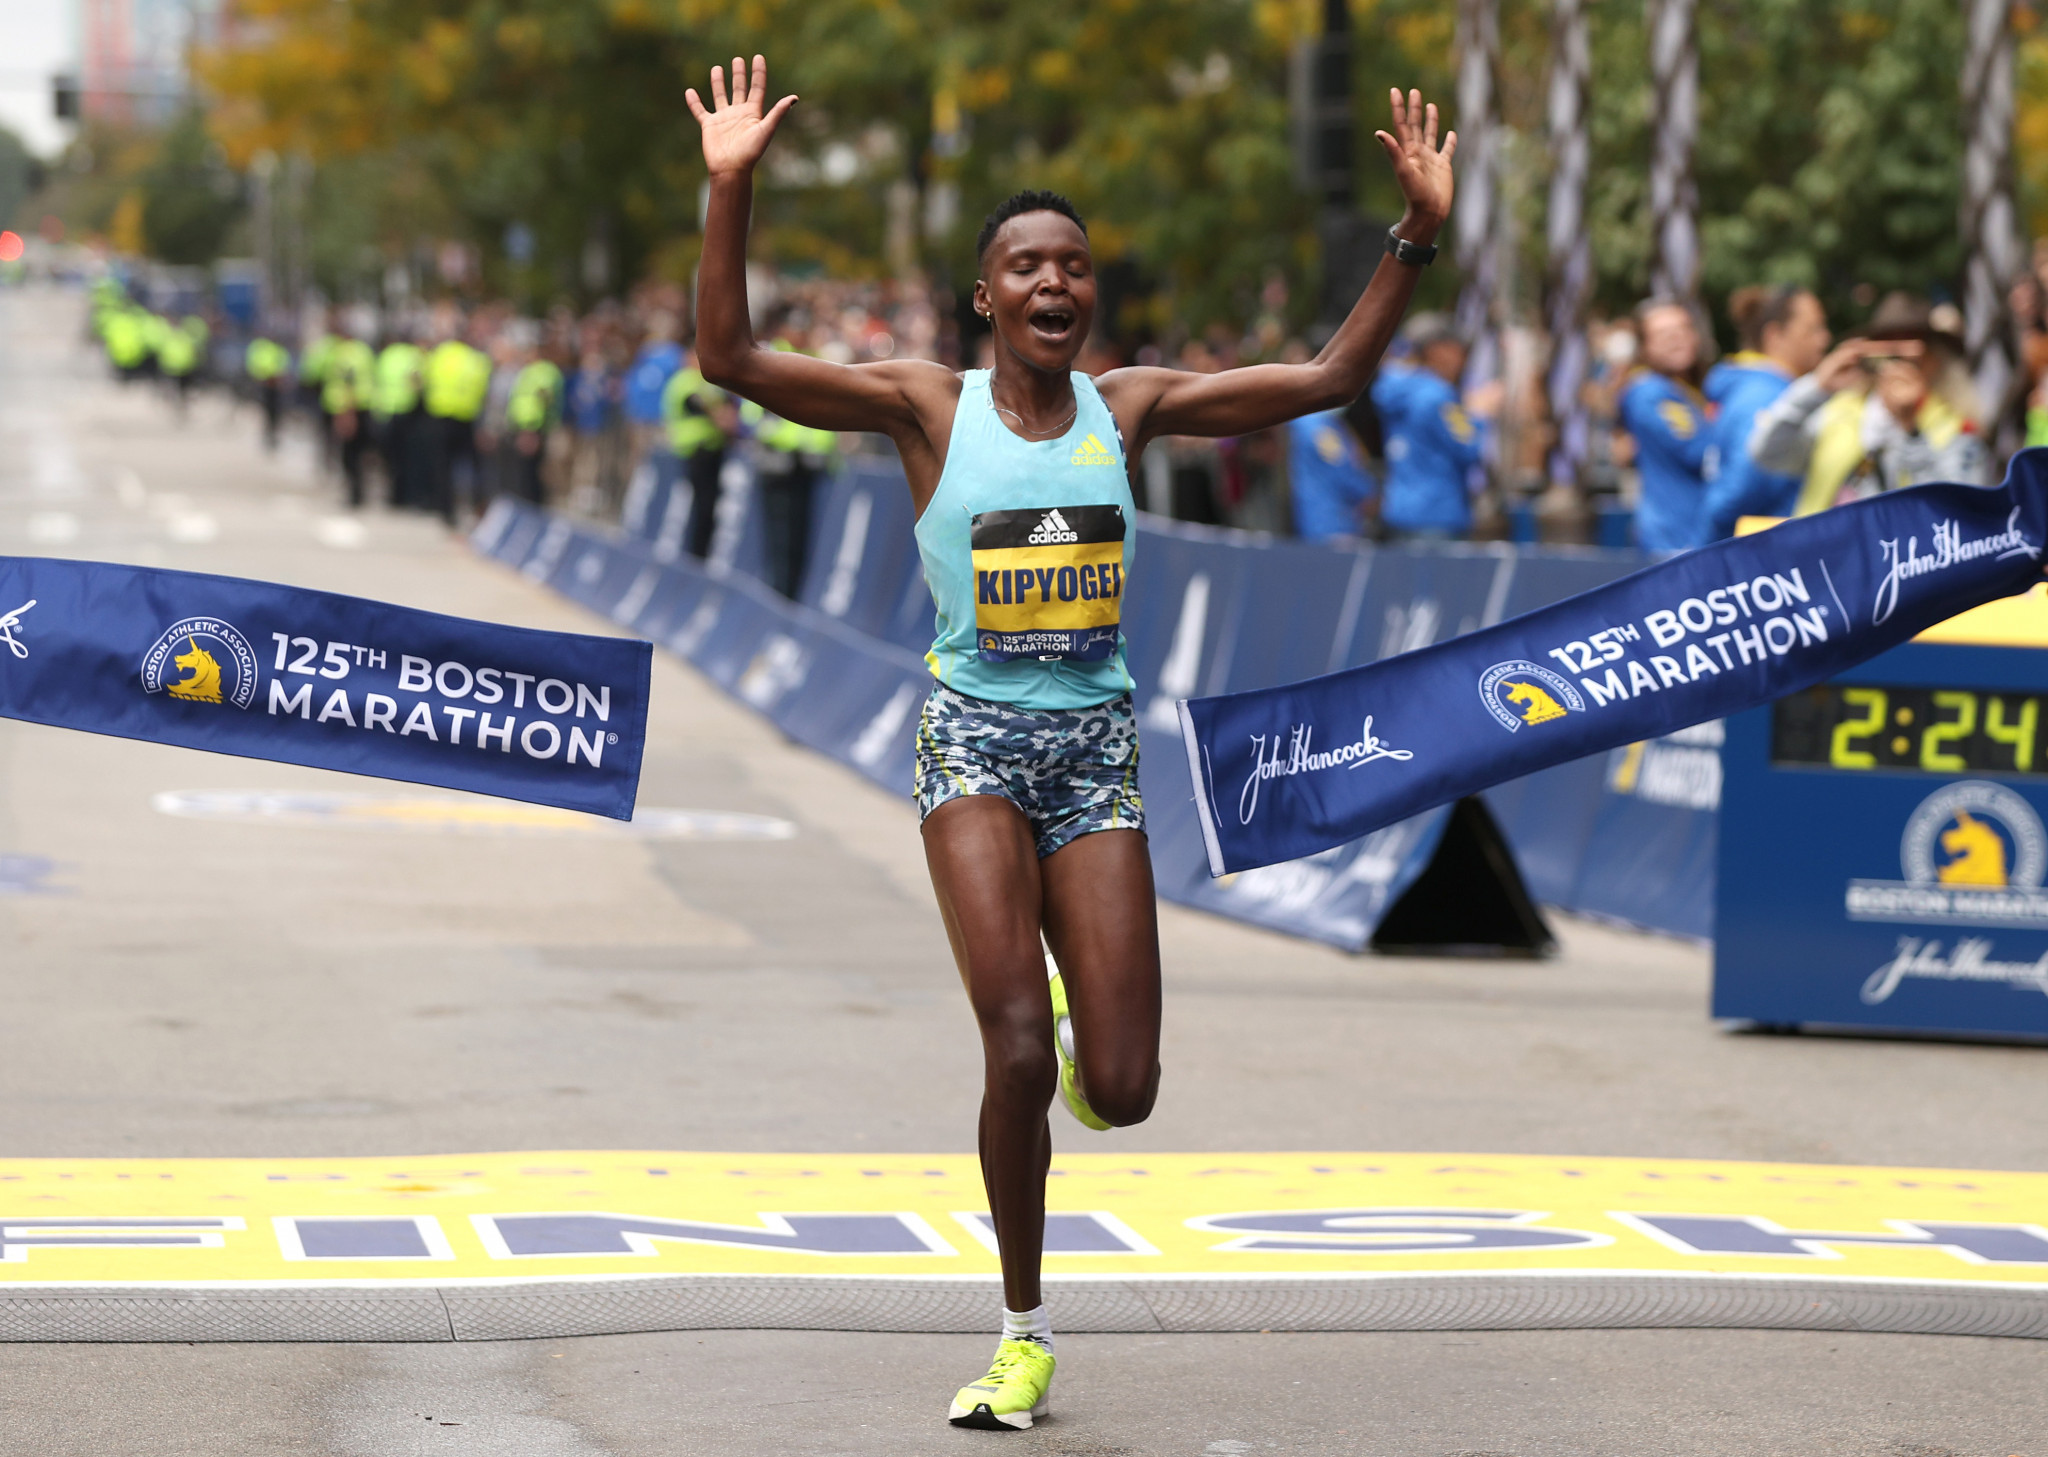 Diana Kipyogei won her first World Marathon Major at the Boston Marathon ©Getty Images